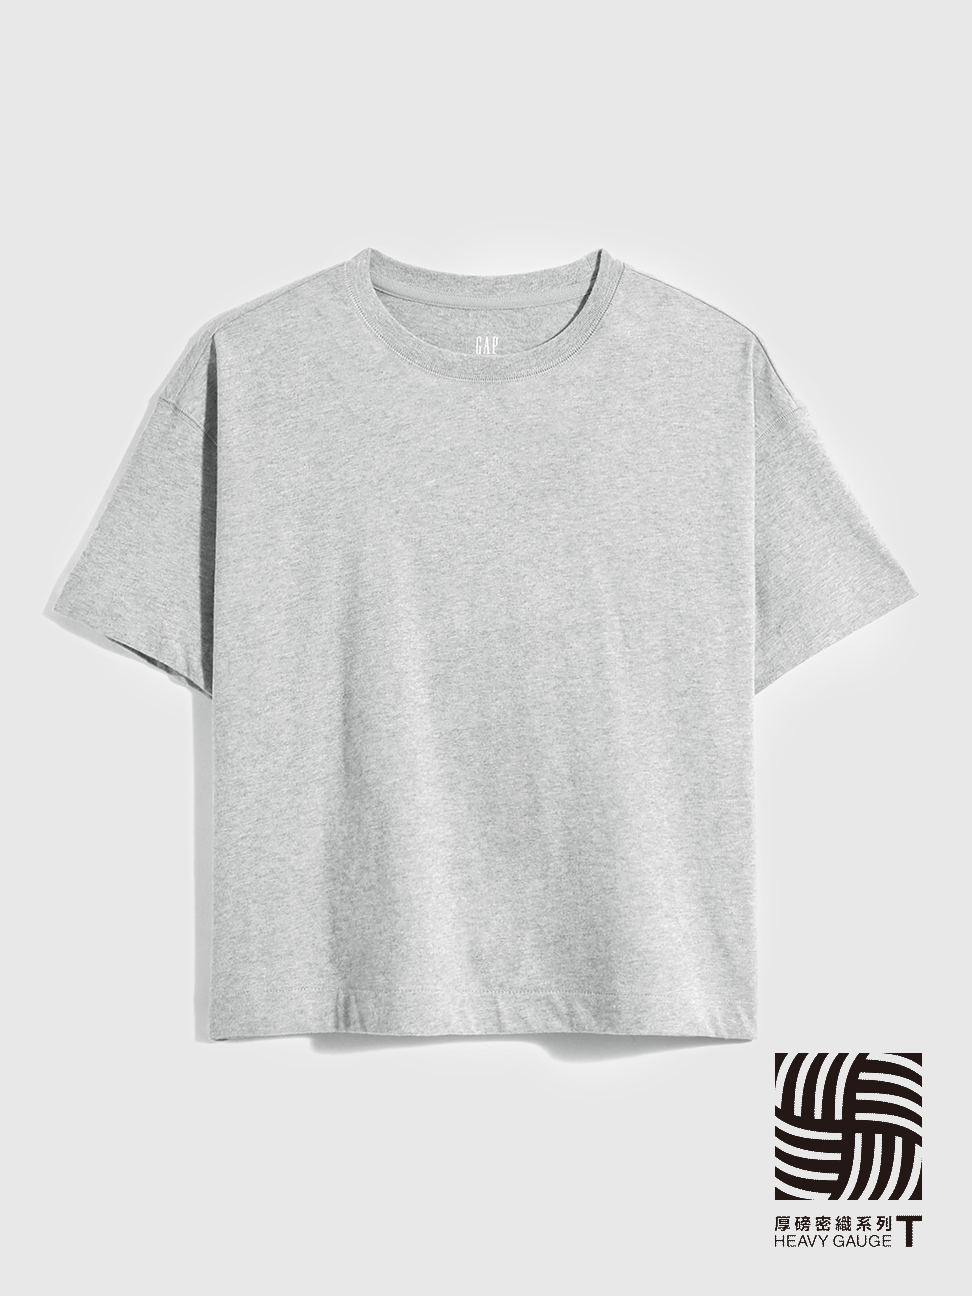 女裝|條紋/素色短袖T恤-淺灰色